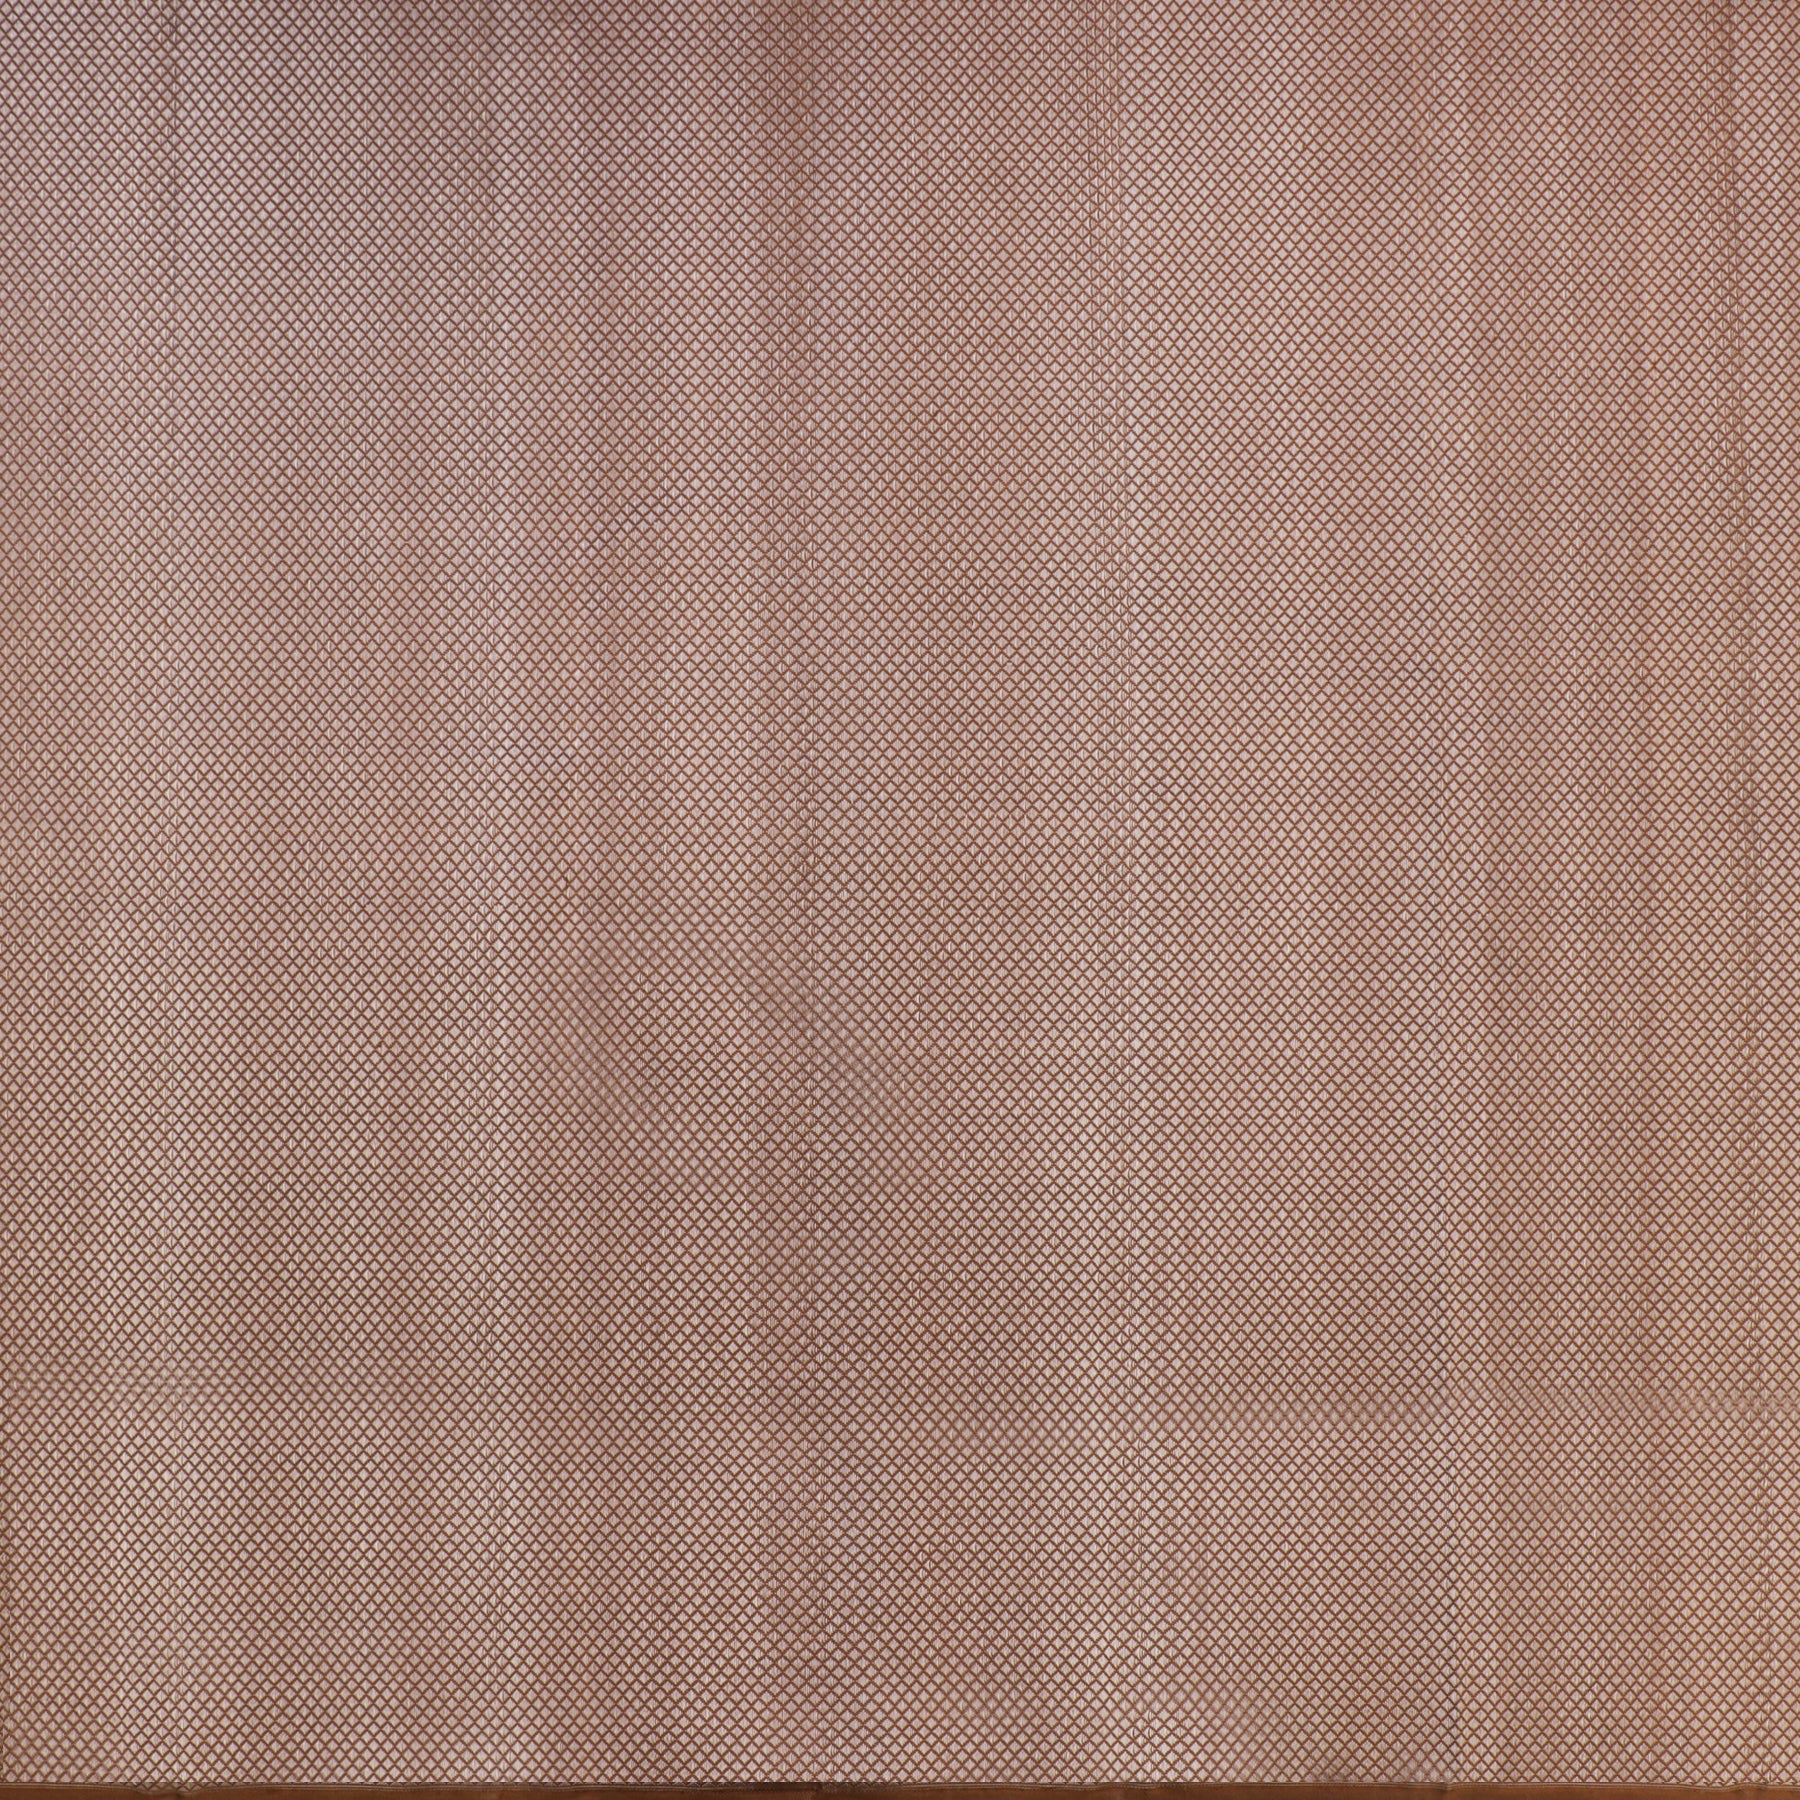 Kanakavalli Kanjivaram Silk Fabric Length 20-110-HF001-01581 - Full View